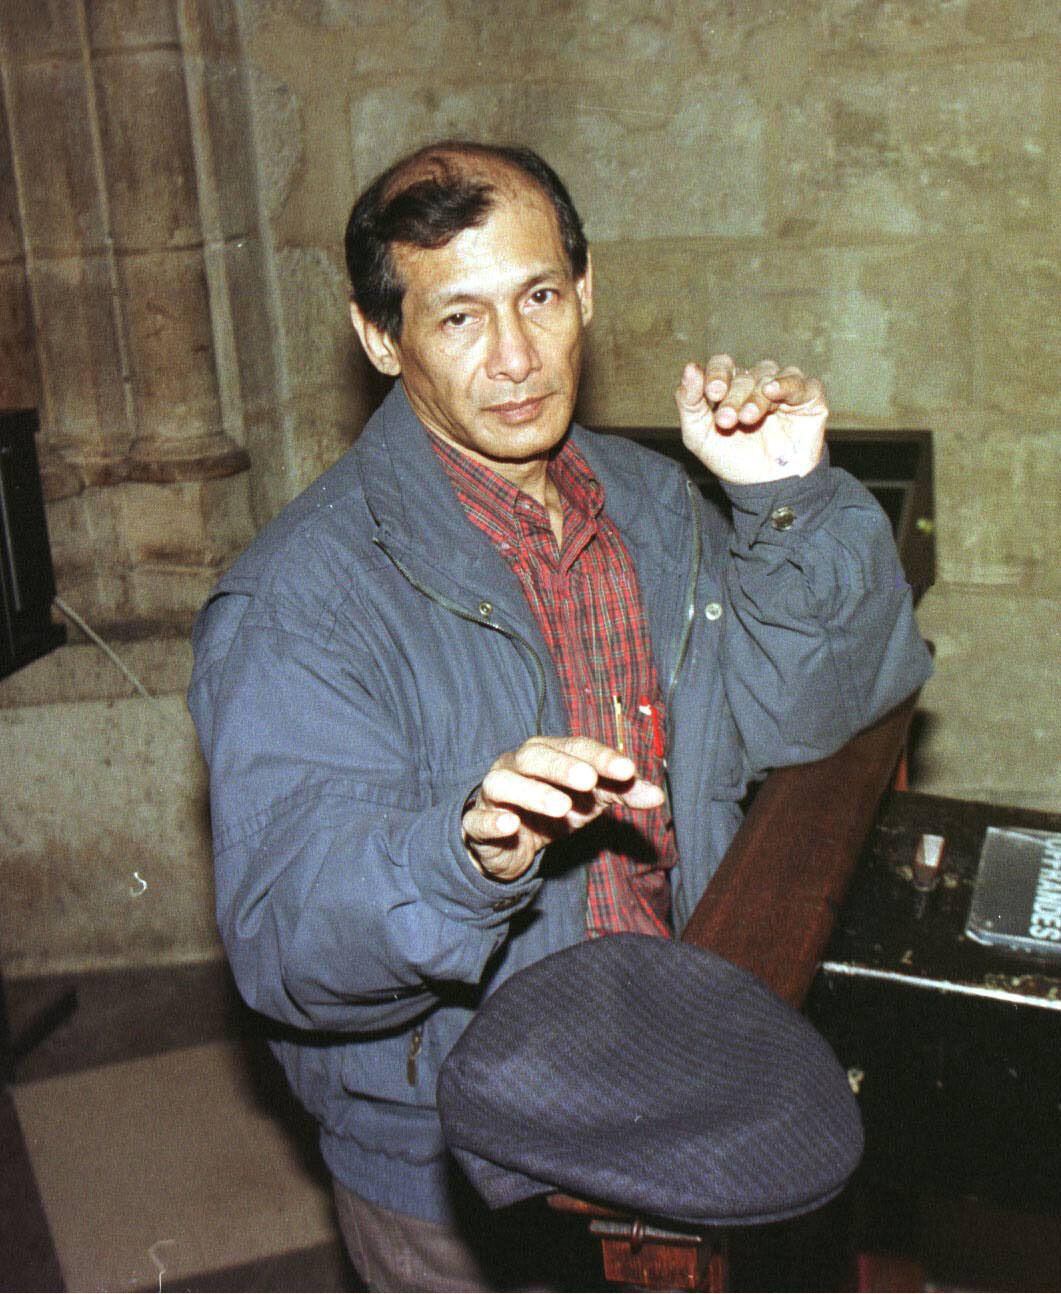 Charles Sobhraj durante su visita a París en 1997. Llegó casi convertido en una estrella y hasta fue a rezar a la catedral de Notre Dame (Austral Int/Shutterstock)